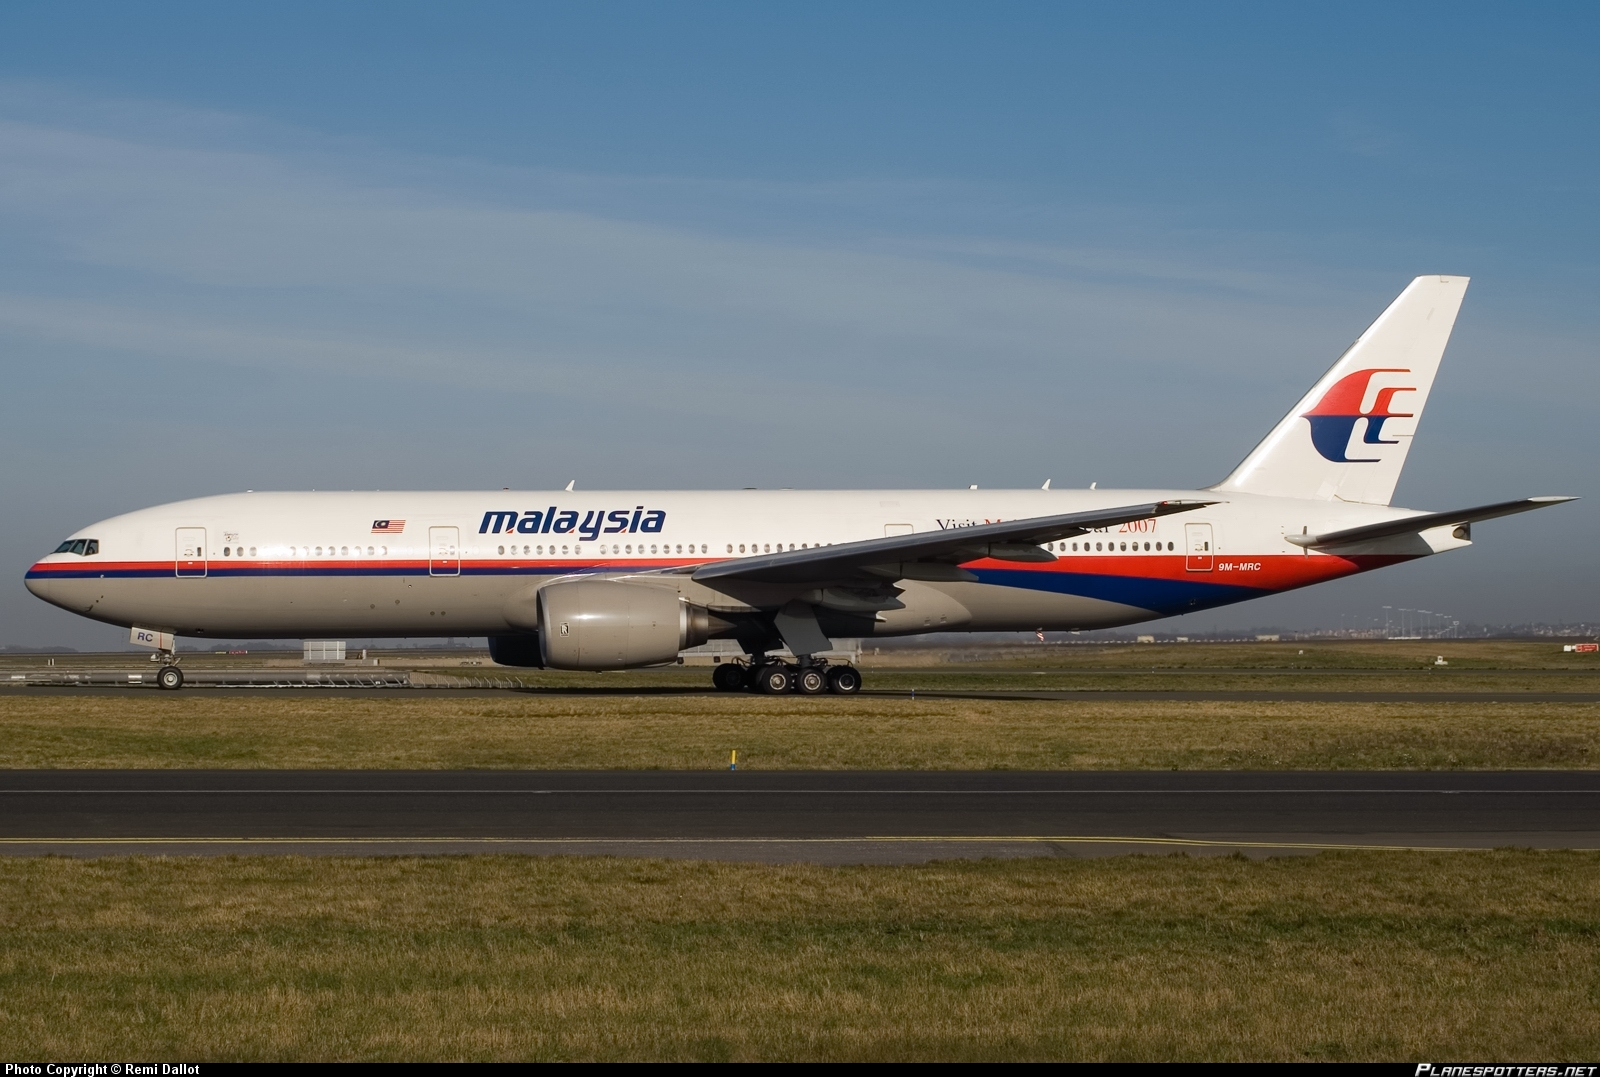 Boeing 777 da Malaysia Airlines pode ter sido derrubado por hackers. Ataque já foi demonstrado antes.